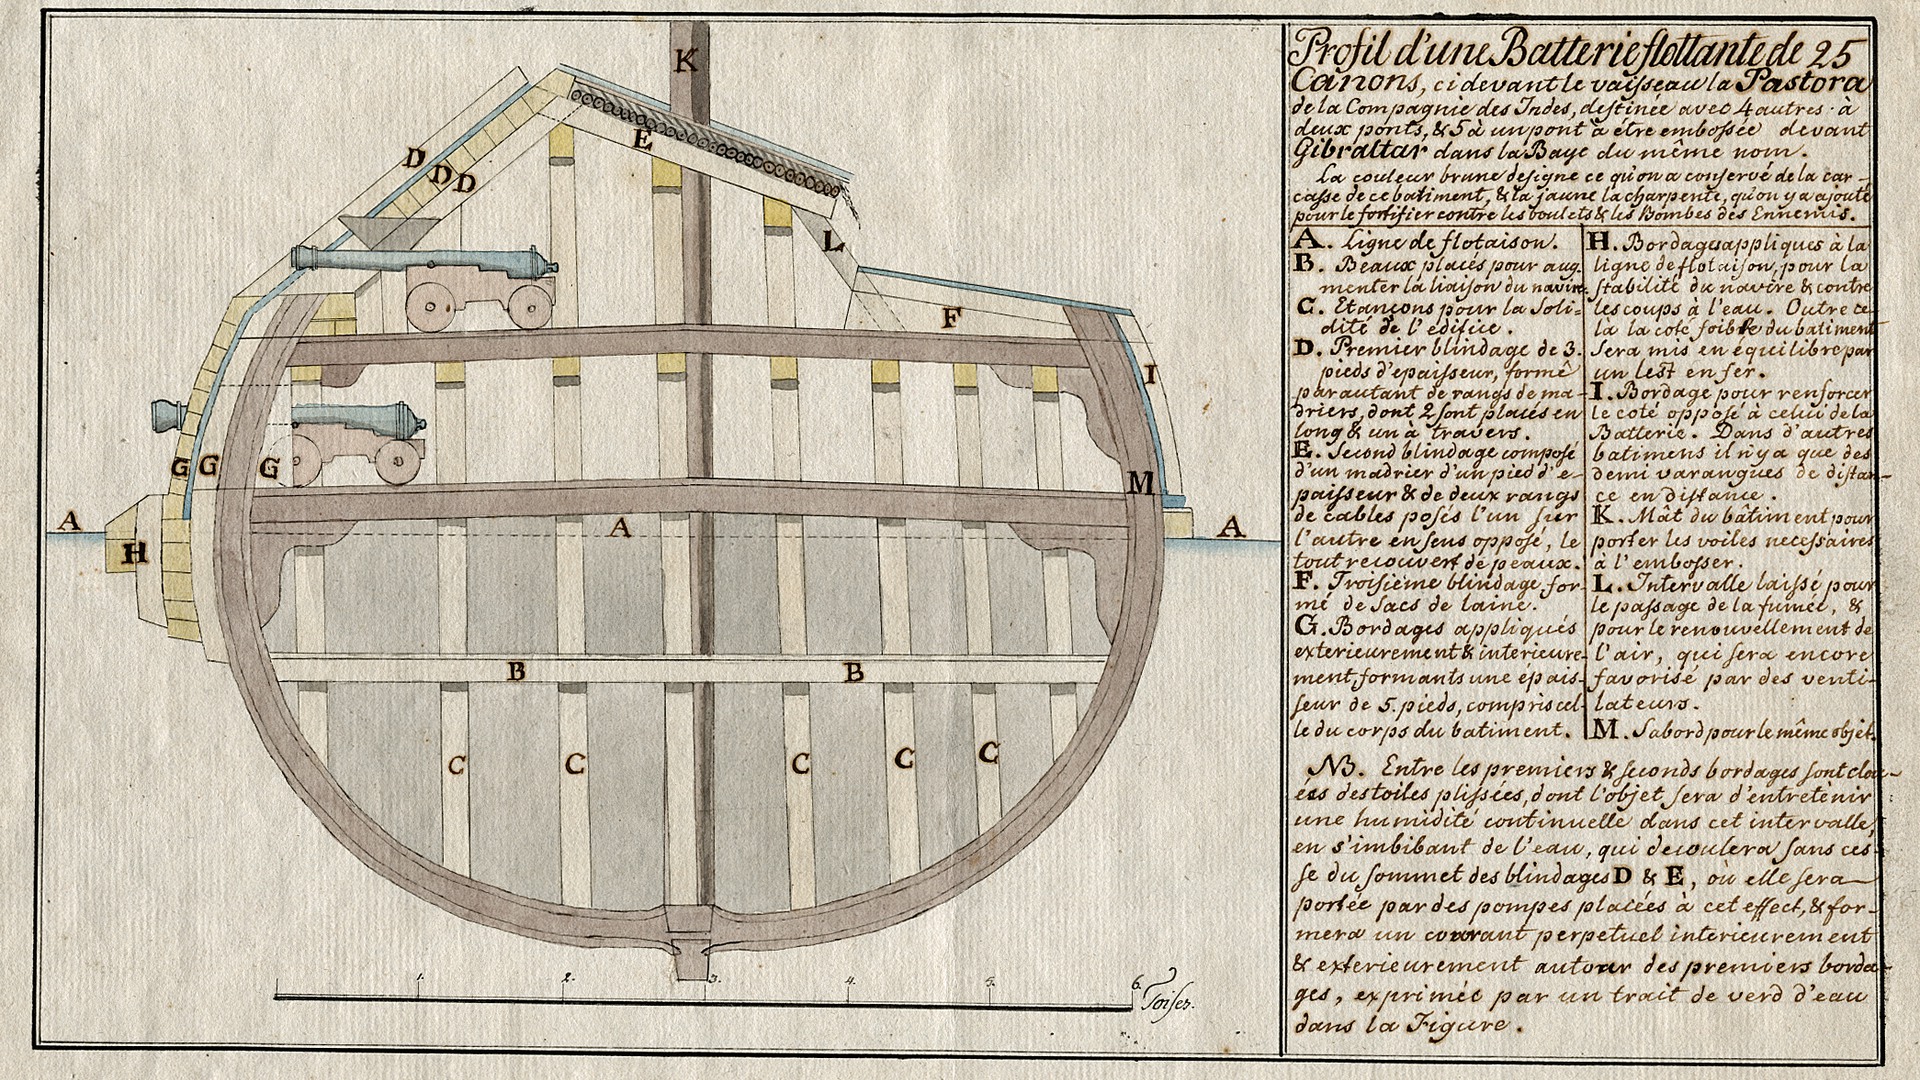 Illustration och beskrivning av kanonerna på ett krigsskepp.